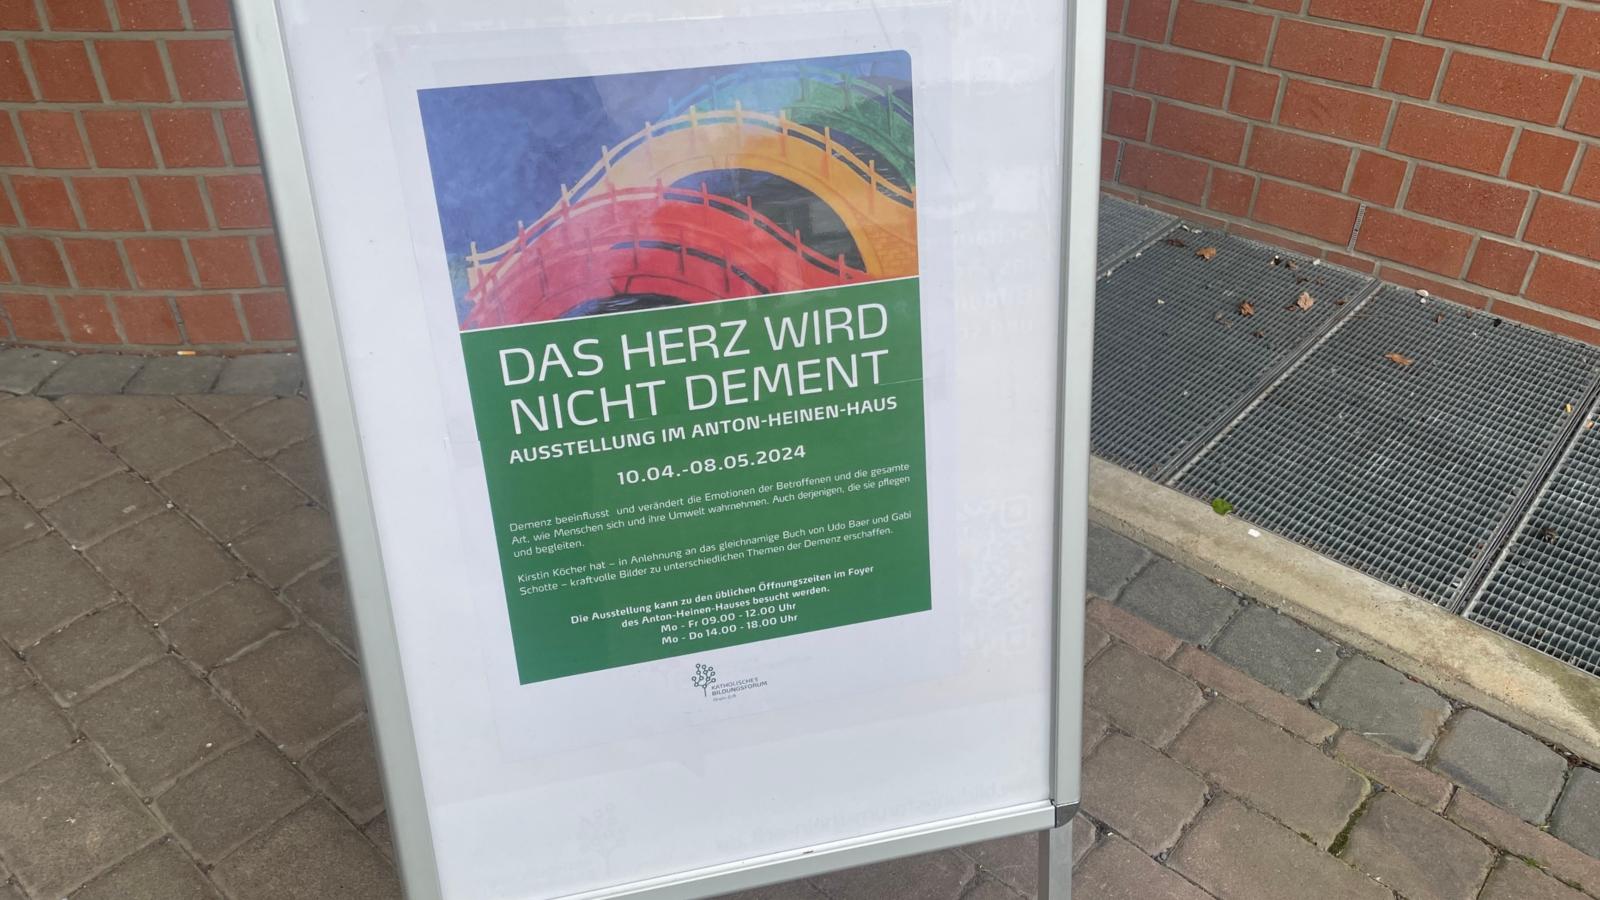 Plakat zur Ausstellung vor dem Anton-Heinen-Haus in Bergheim